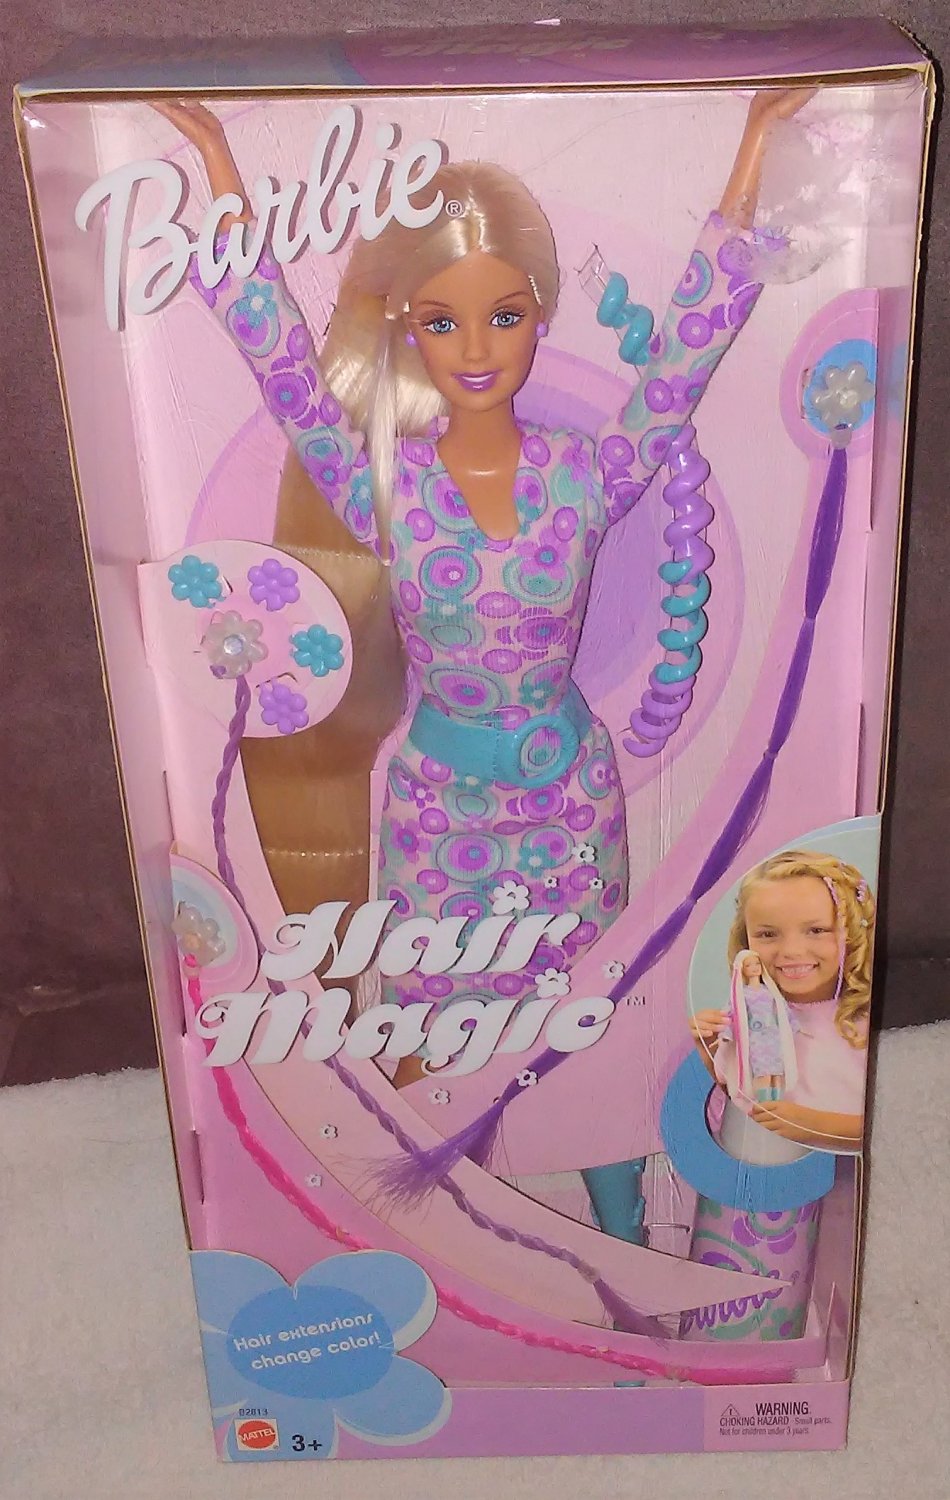 magic hair barbie